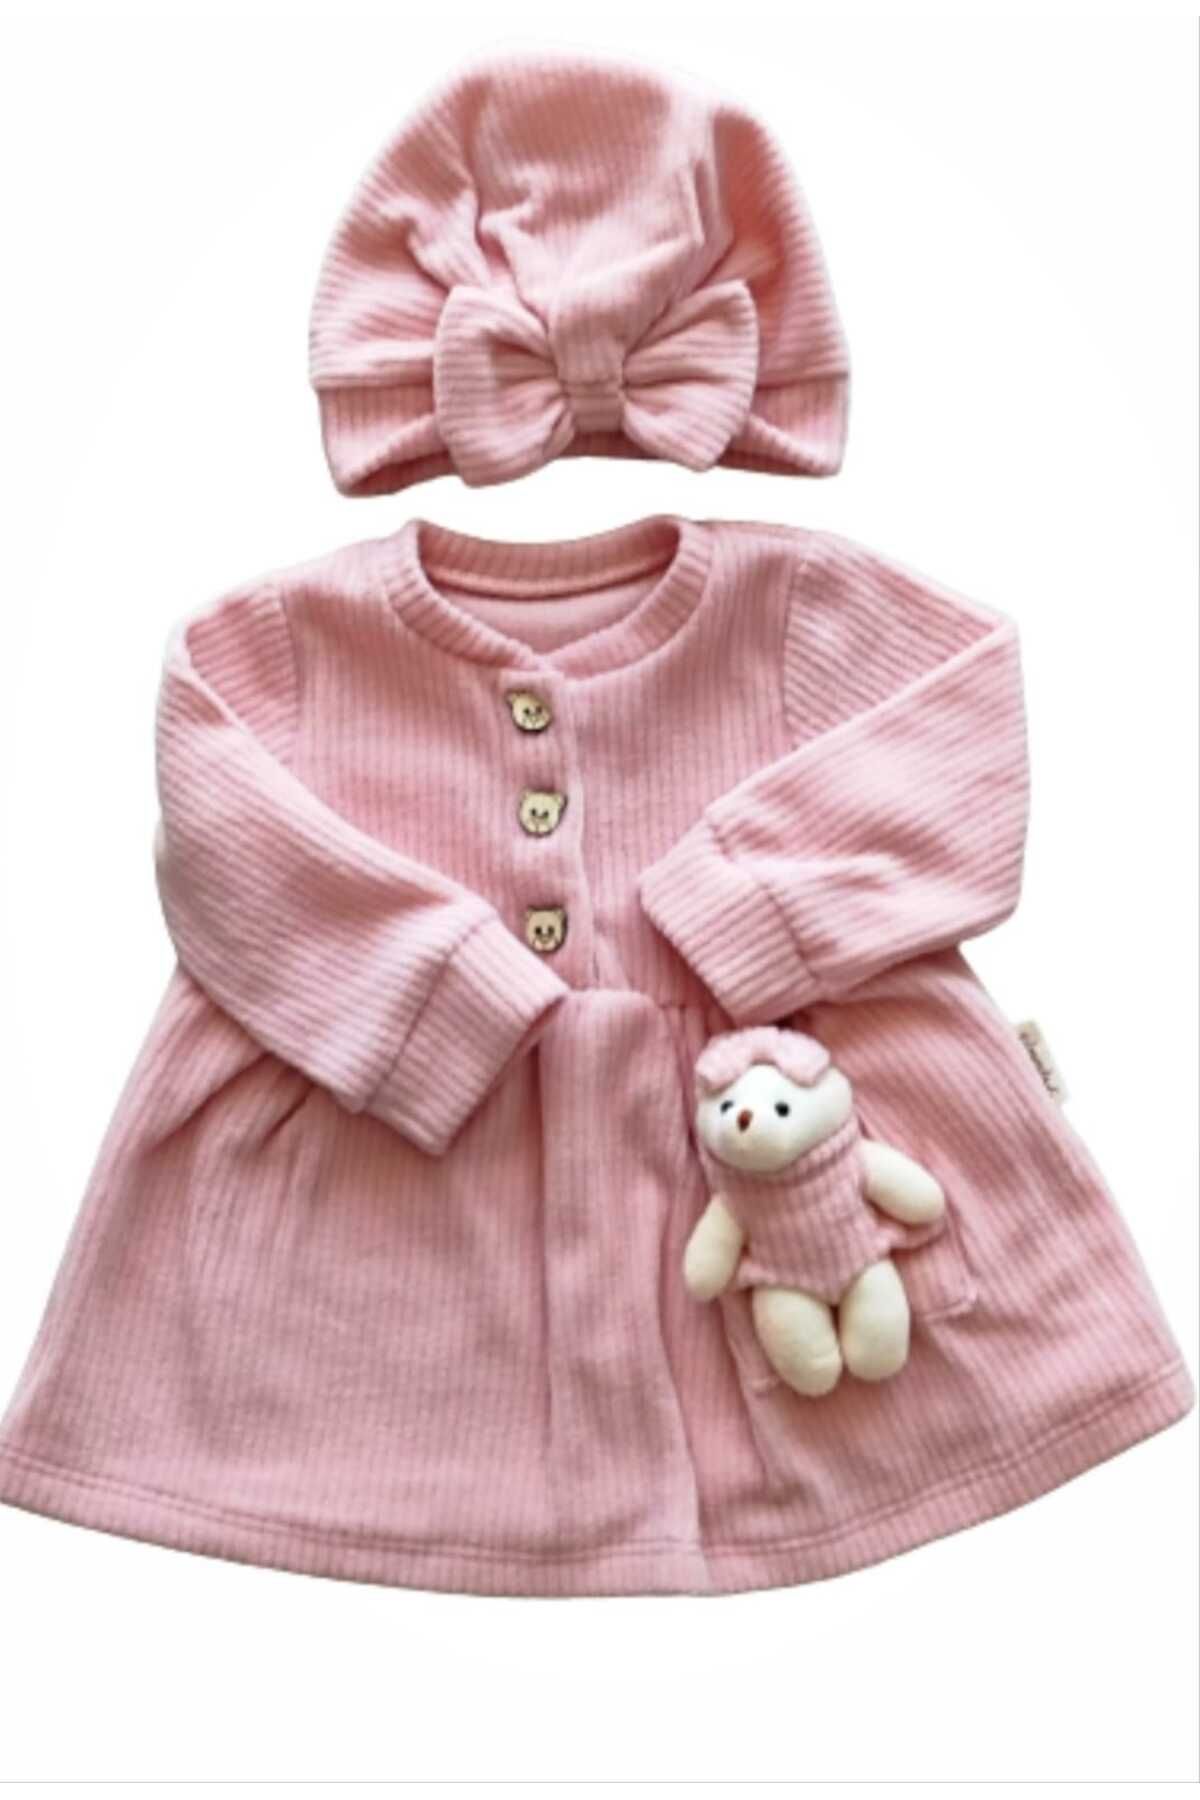 DIDuStore 3/18 Ay Kız Çocuk Kıyafet Modelleri Ayıcıklı Kız Bebek Polar Elbise Takımı